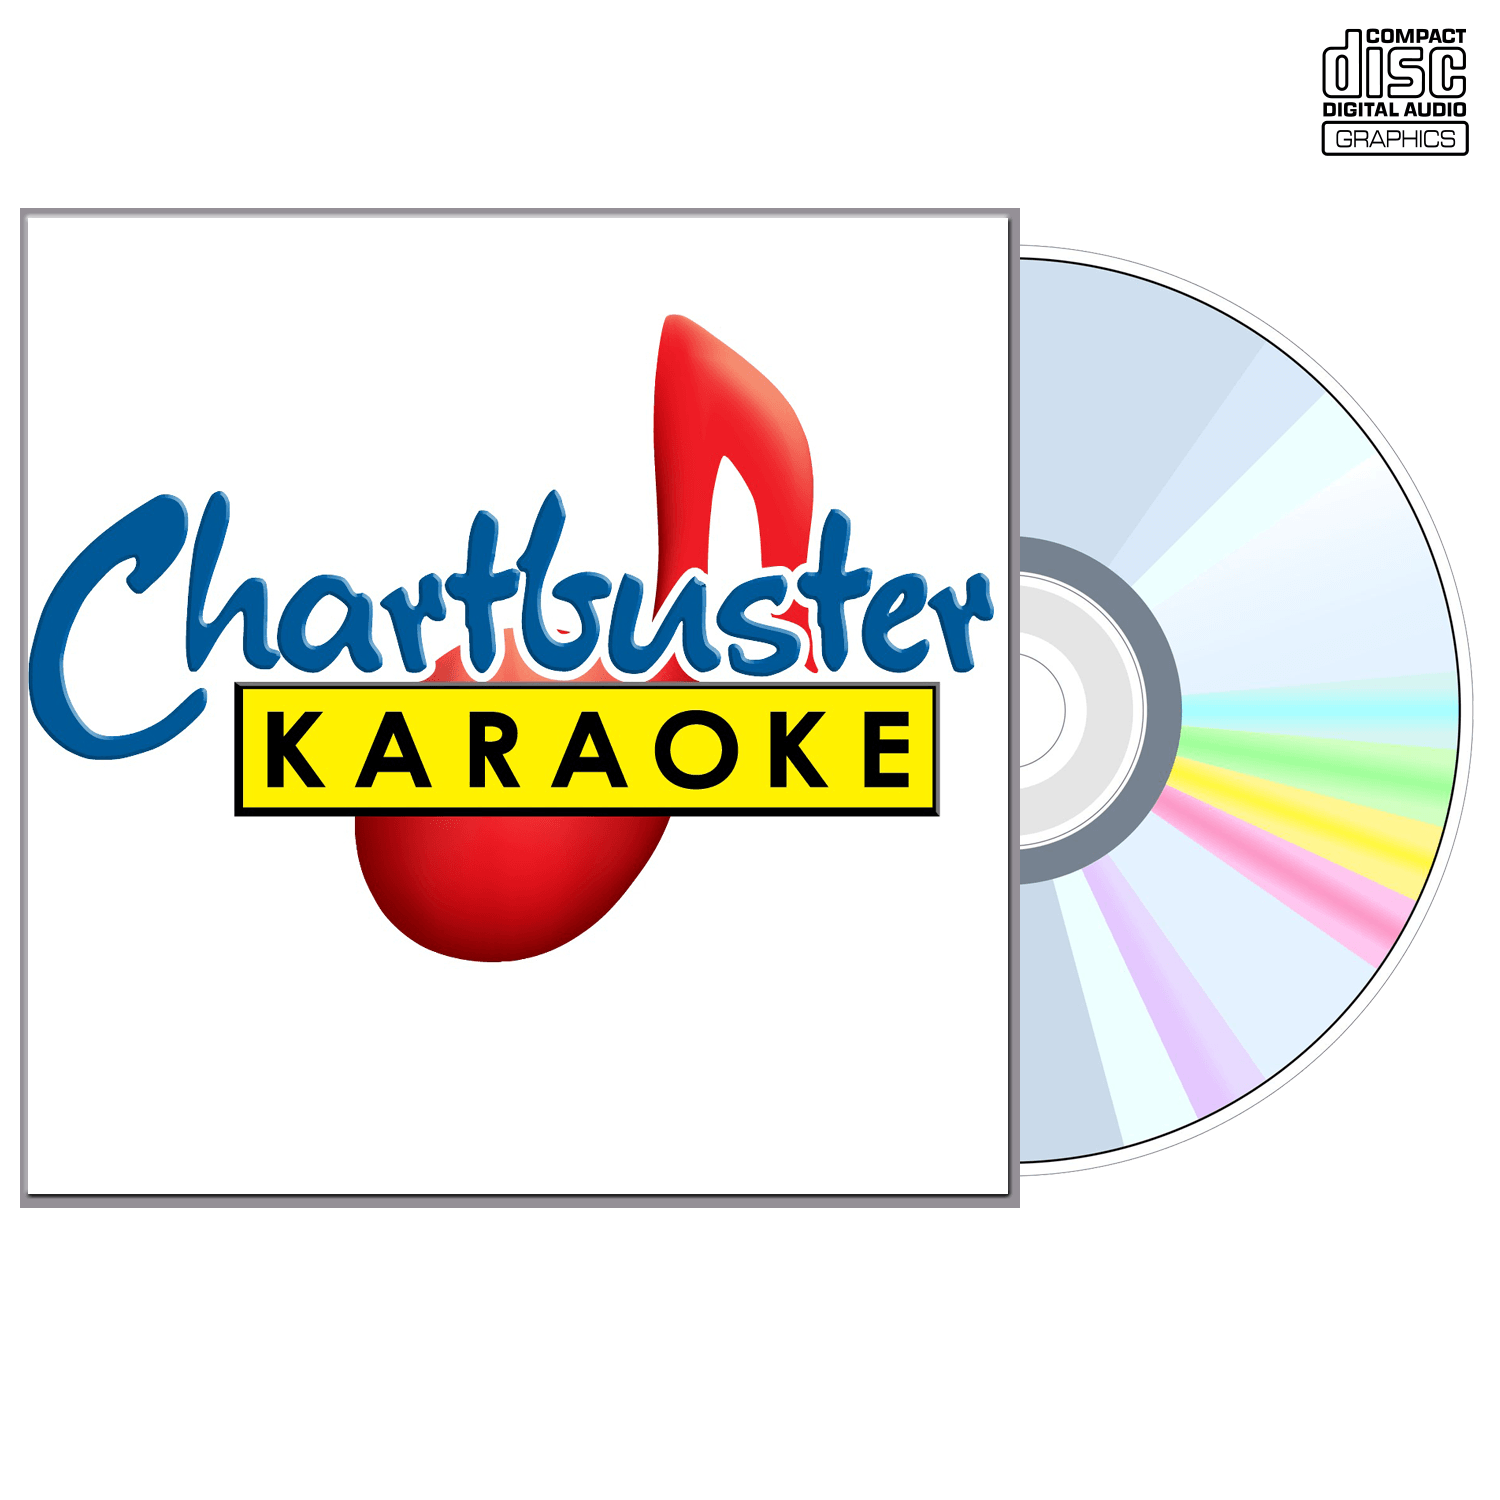 John Conlee - CD+G - Chartbuster Karaoke - Karaoke Home Entertainment